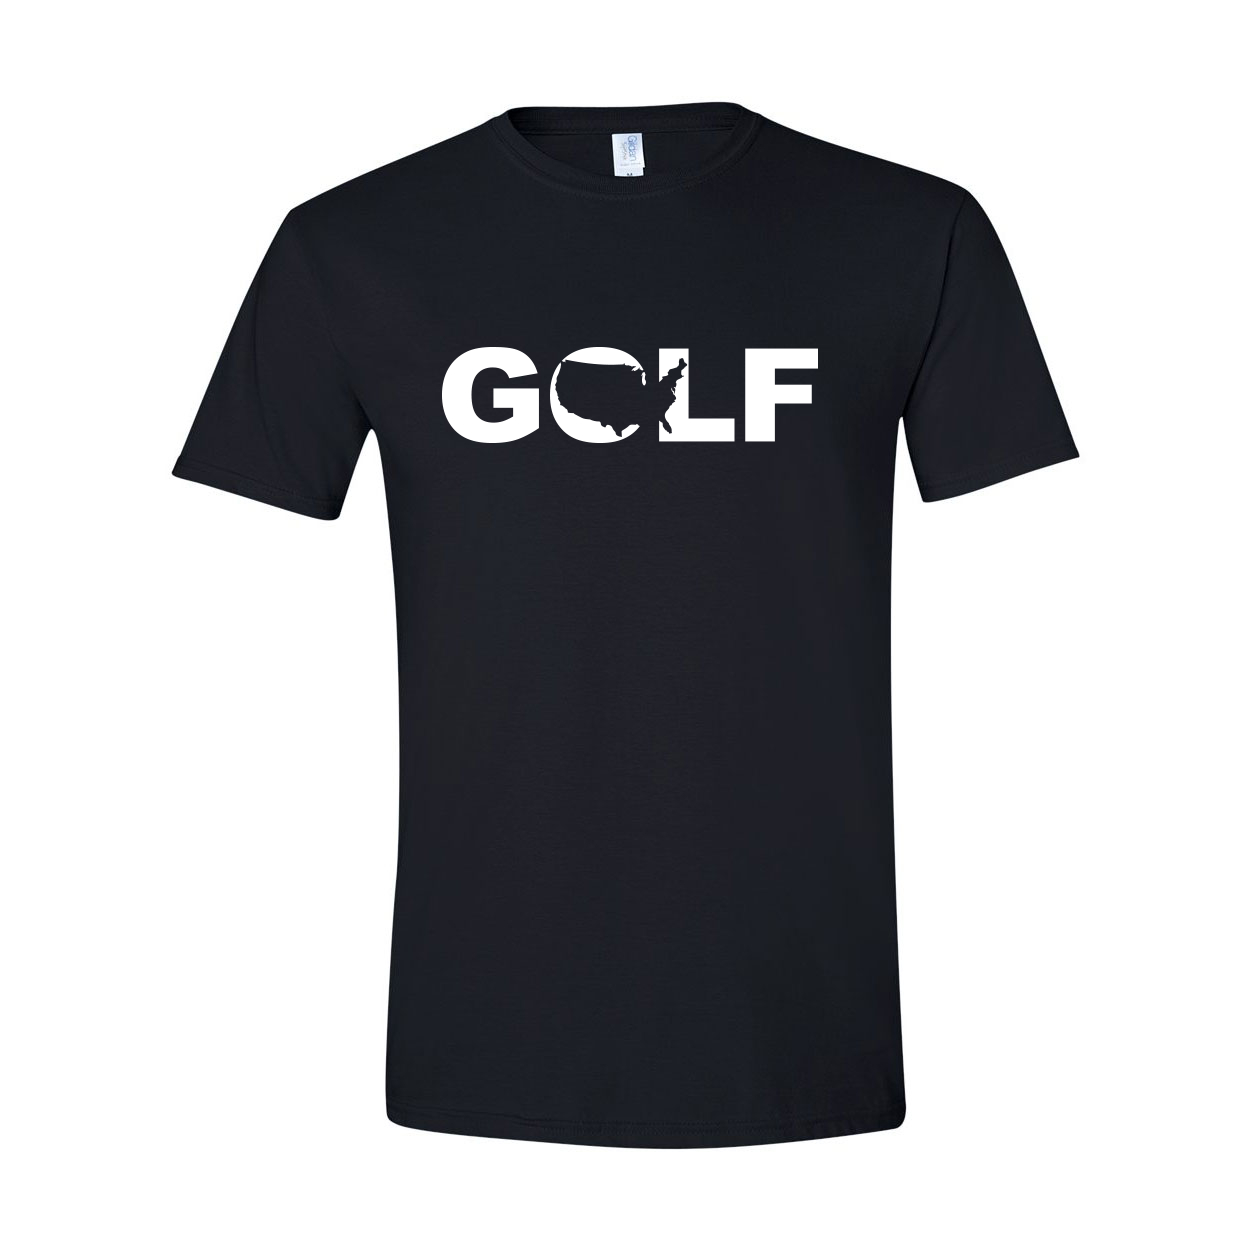 Golf United States Classic T-Shirt Black (White Logo)